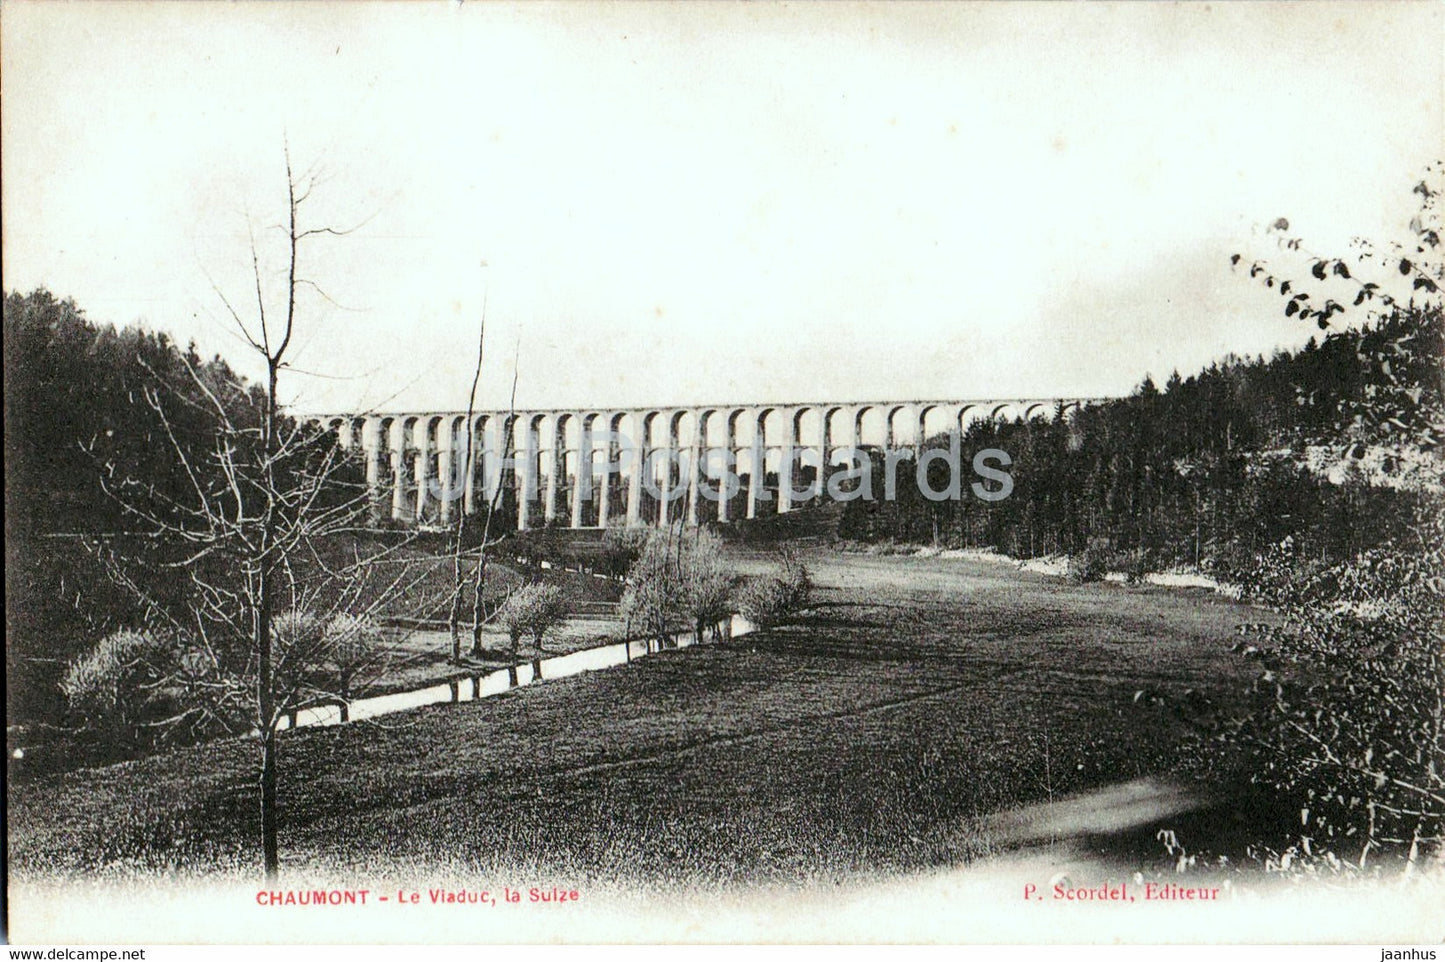 Chaumont - Le Viaduc - La Suize - old postcard - France - unused - JH Postcards